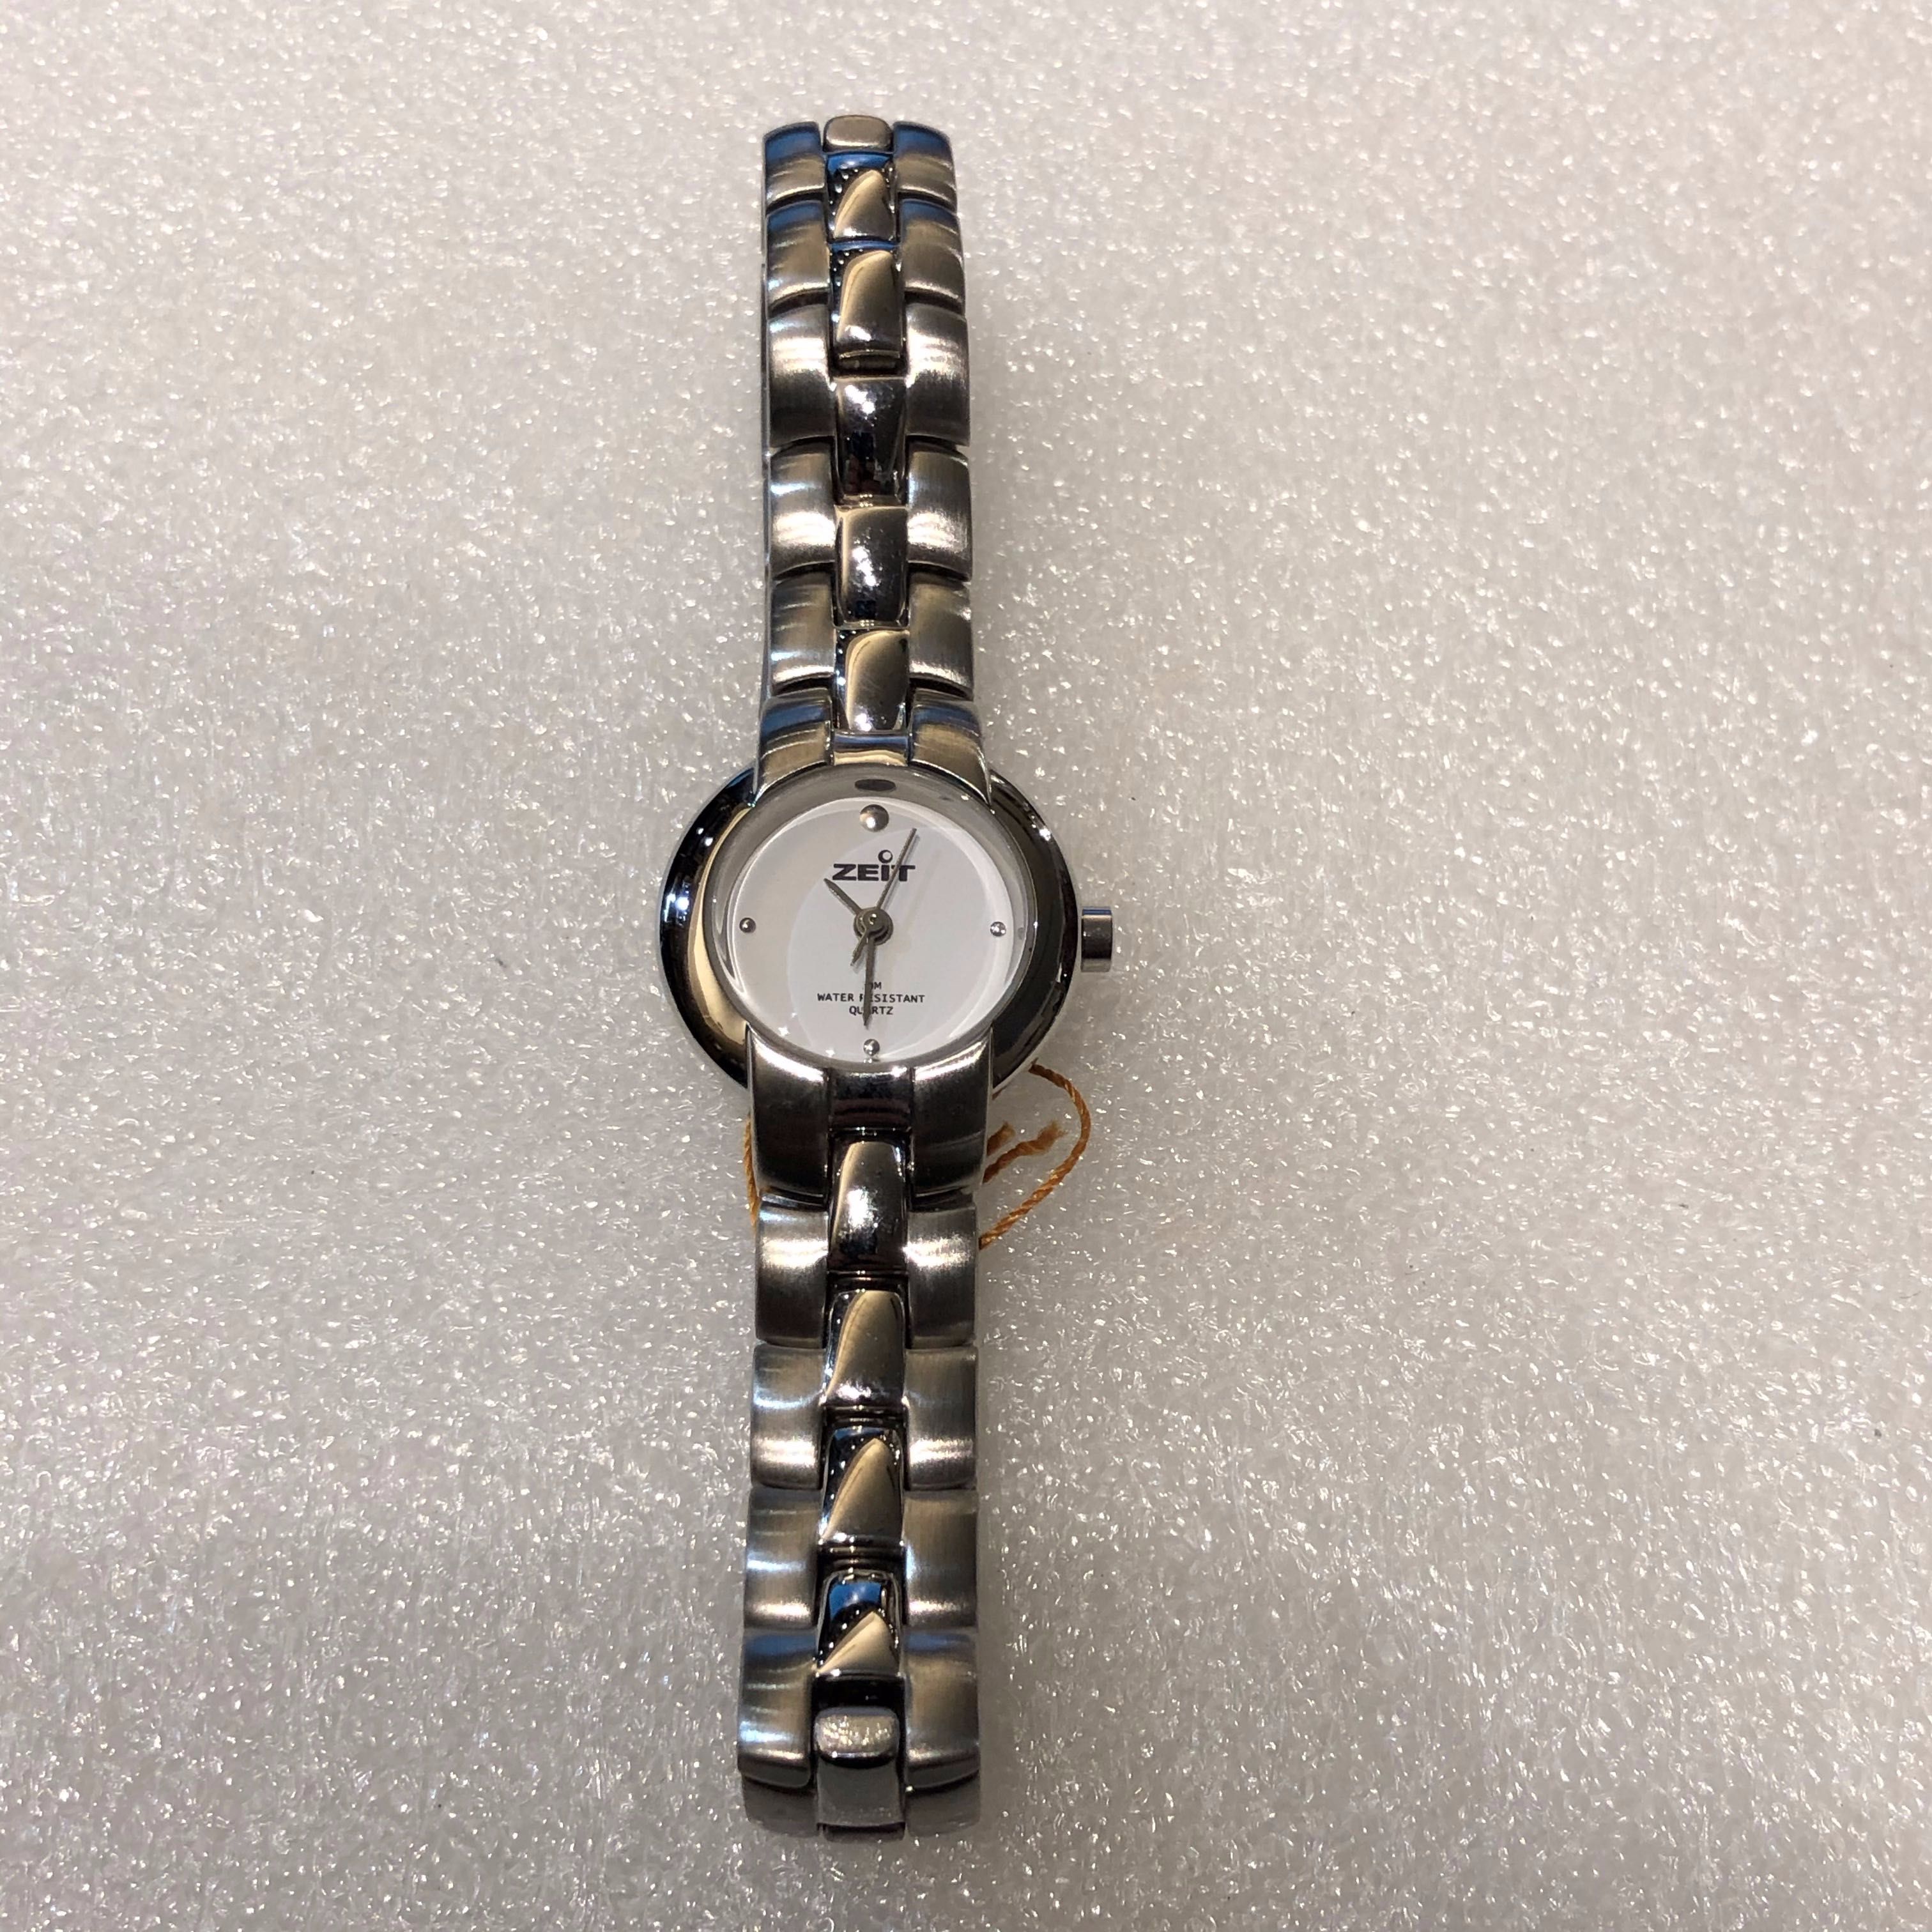 Relógio Zeit Quartz 22mm - Nunca Usado com Etiqueta